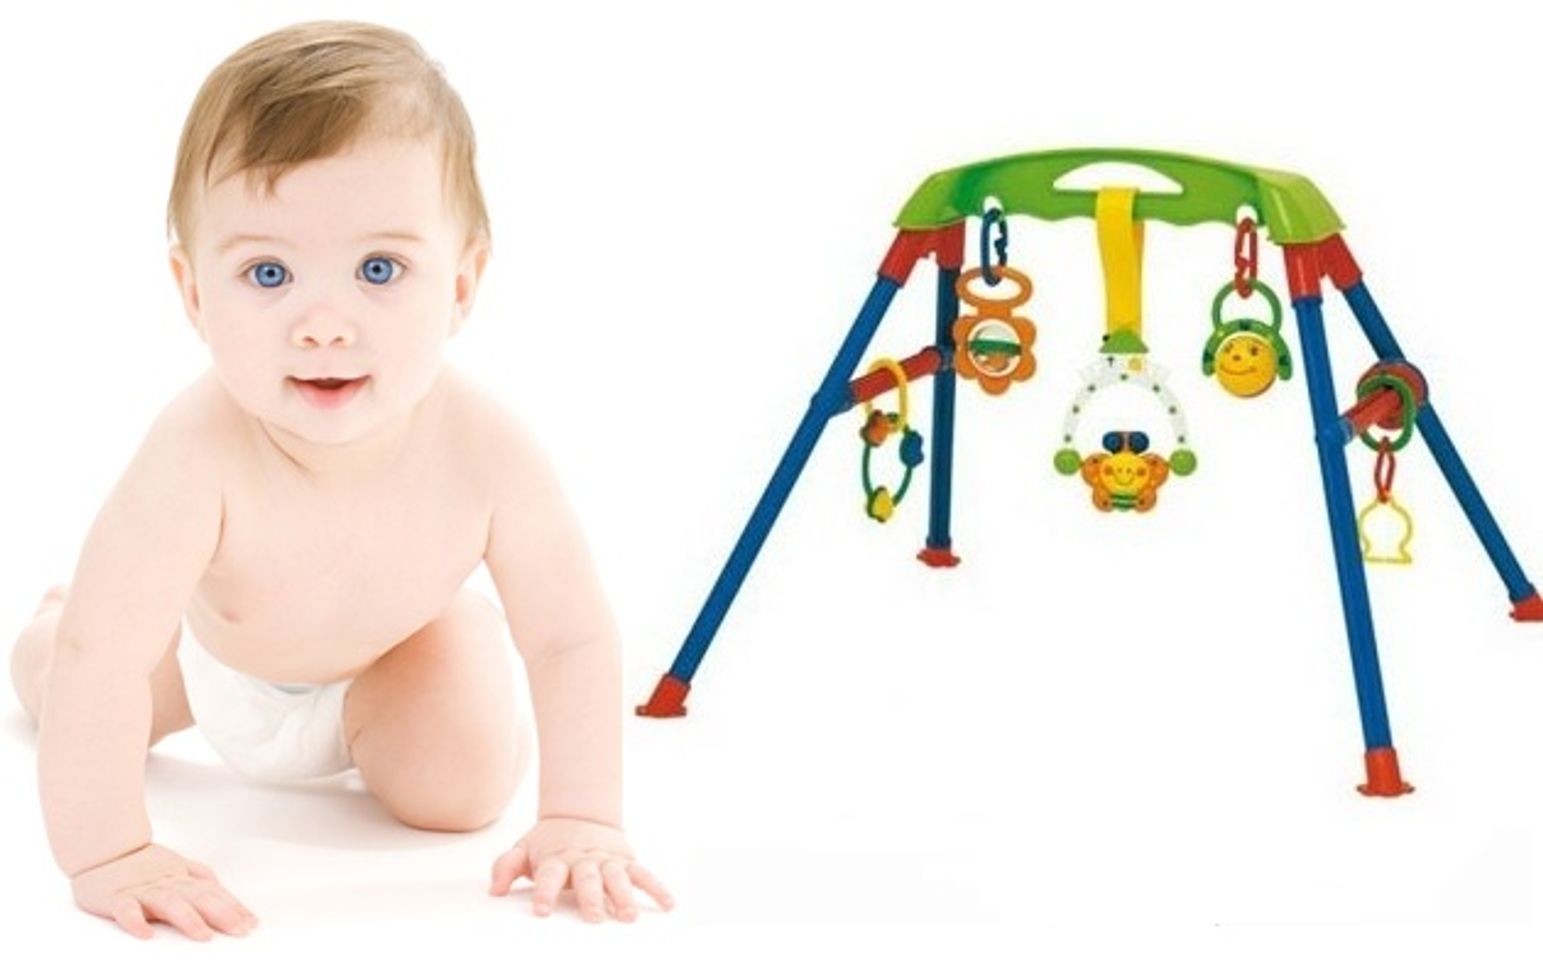 Đi kèm với kệ là các món đồ chơi cho bé giúp hỗ trợ phát triển các kỹ năng cho bé ngay từ khi còn nhỏ